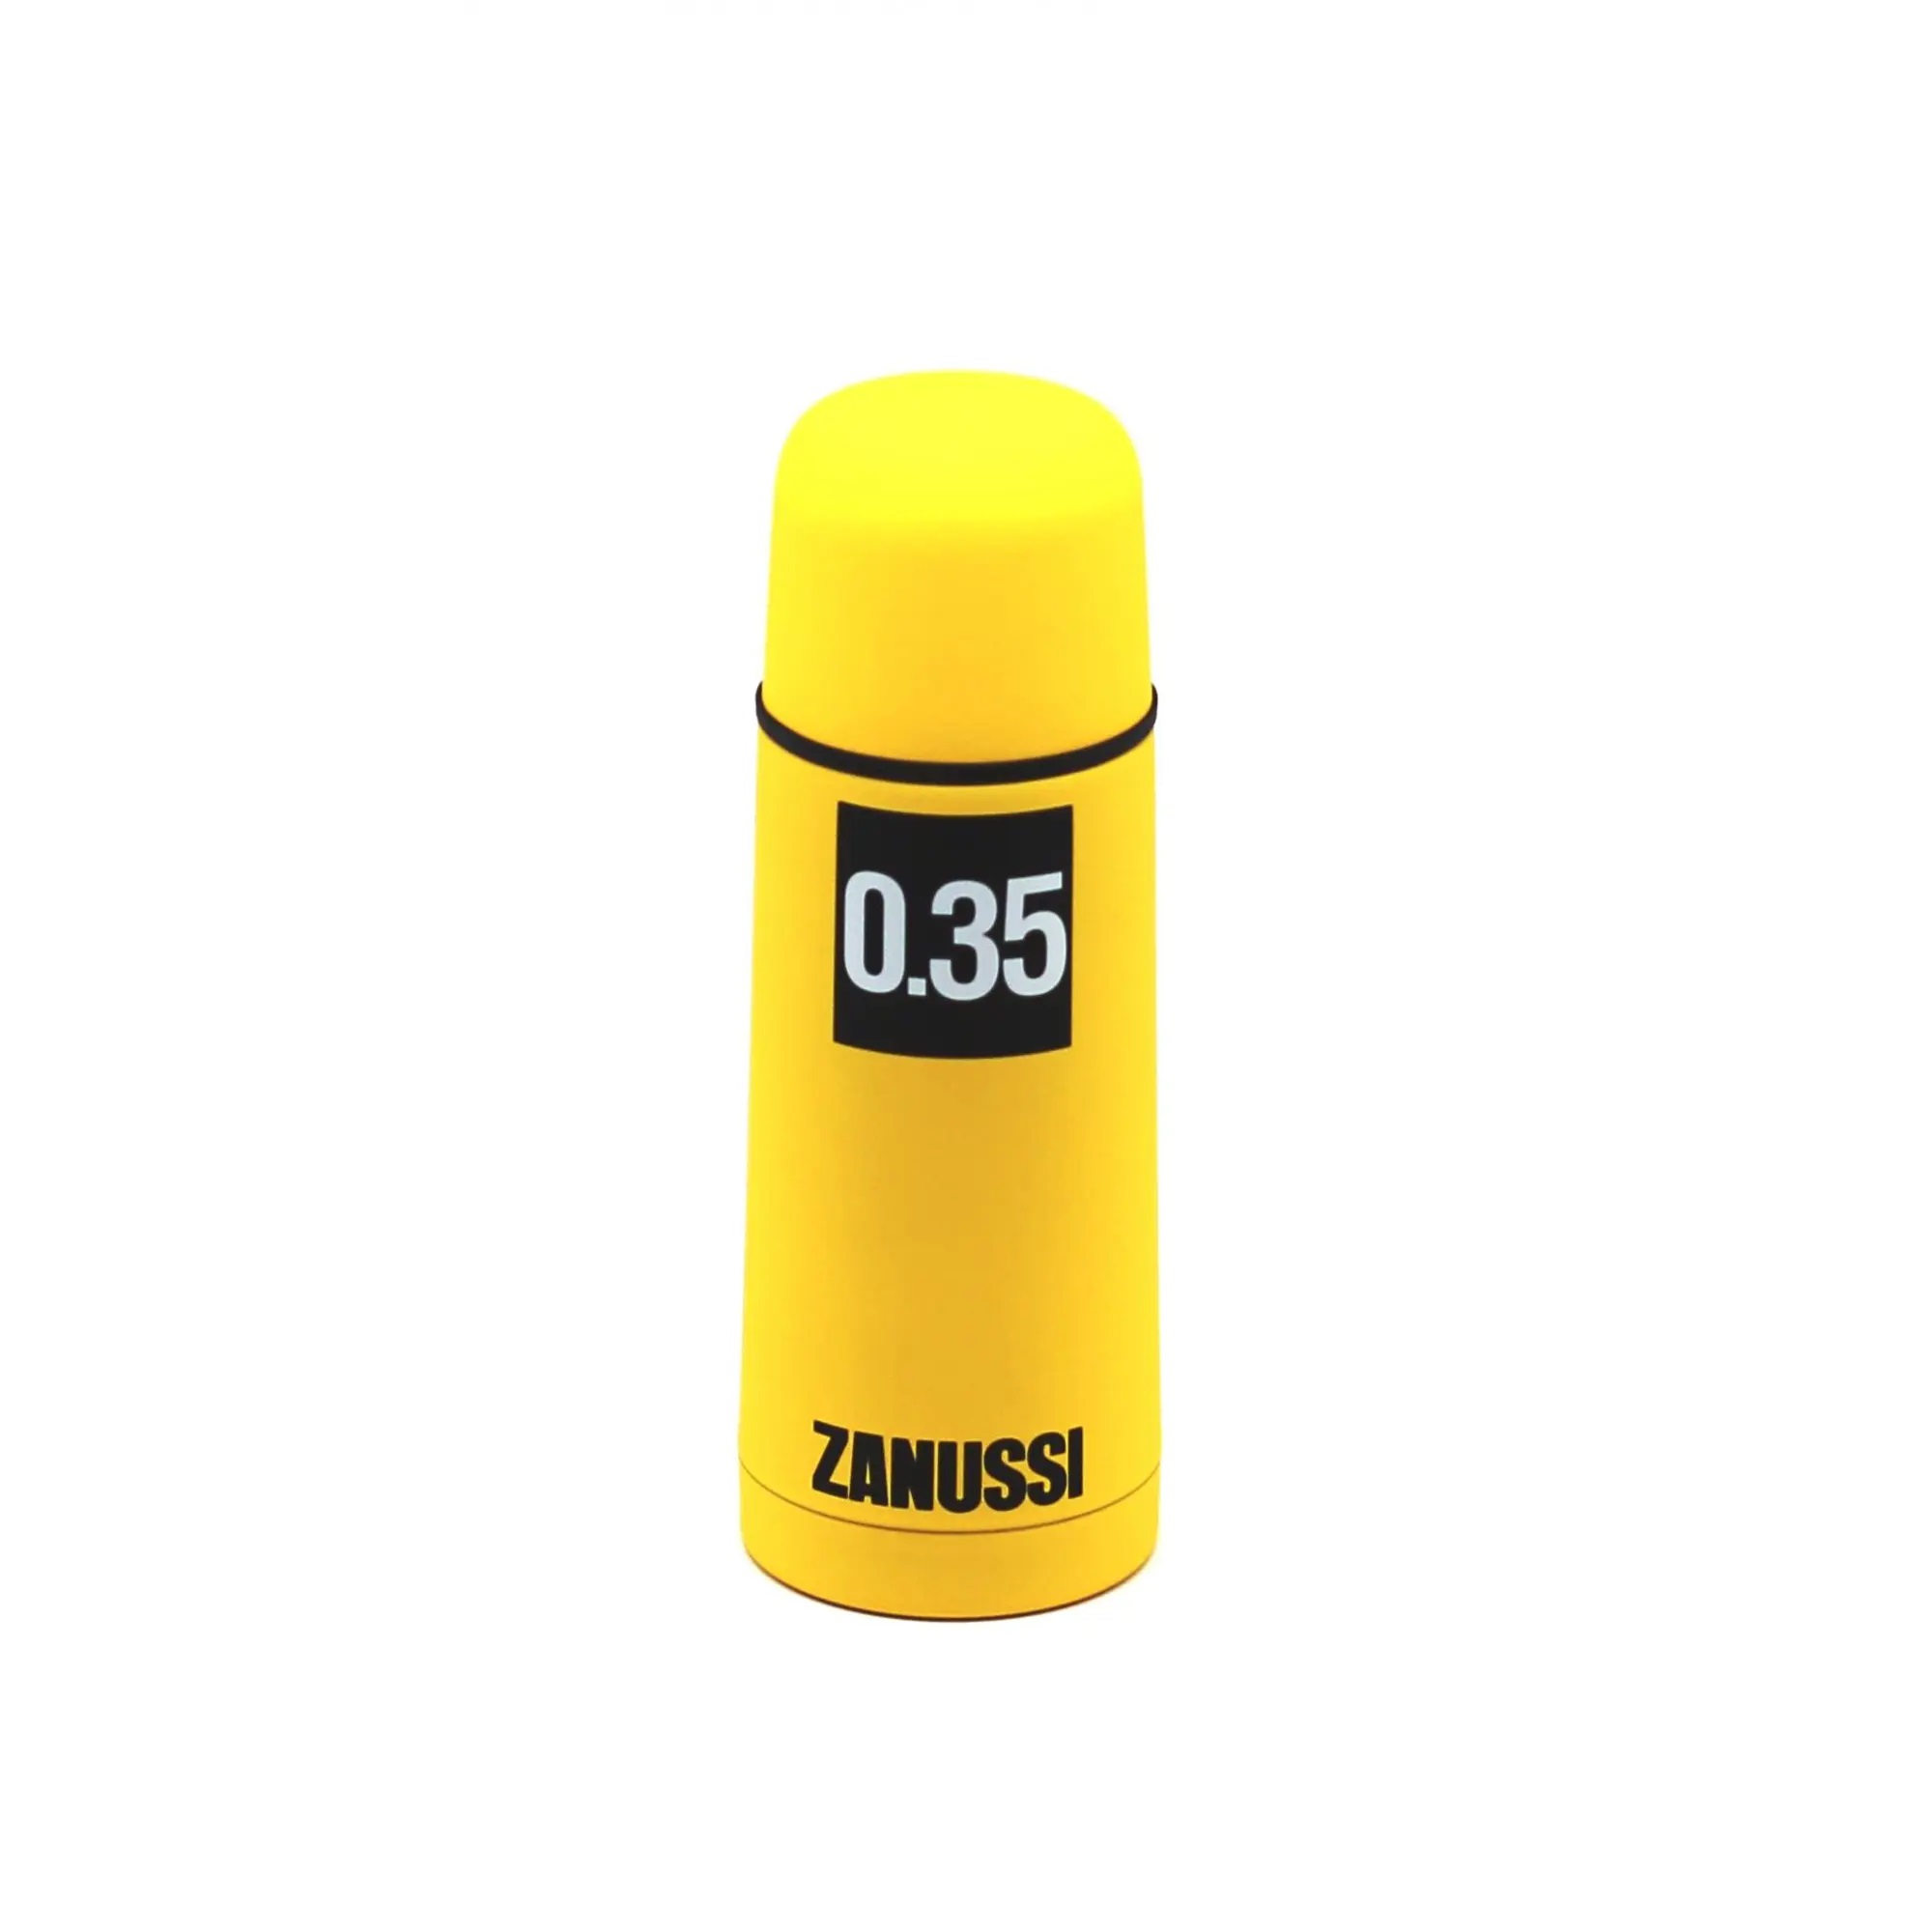 Термос Zanussi желтый 035 л (ZVF11221CF) термос с узким горлом арктика желтый 708 700 желтый